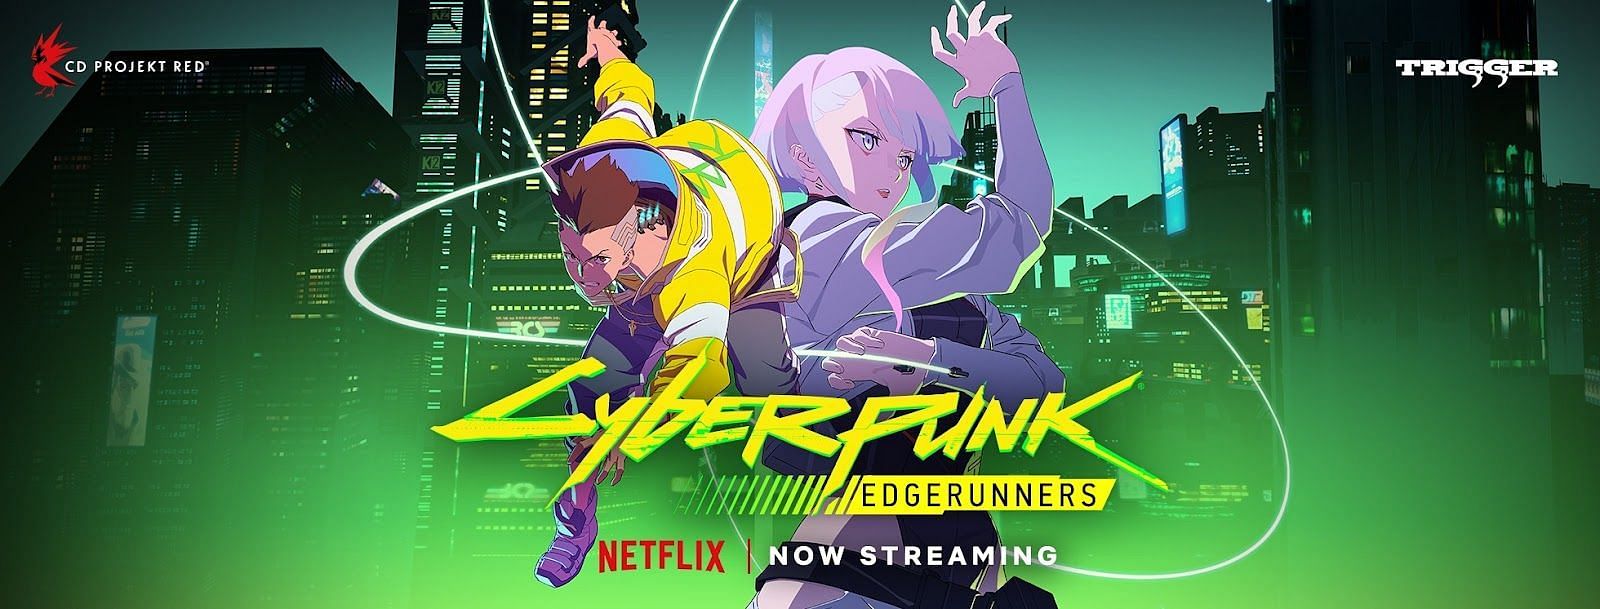 Cyberpunk: Edgerunners Anime Reveals New Trailer, Japanese Cast - News -  Anime News Network